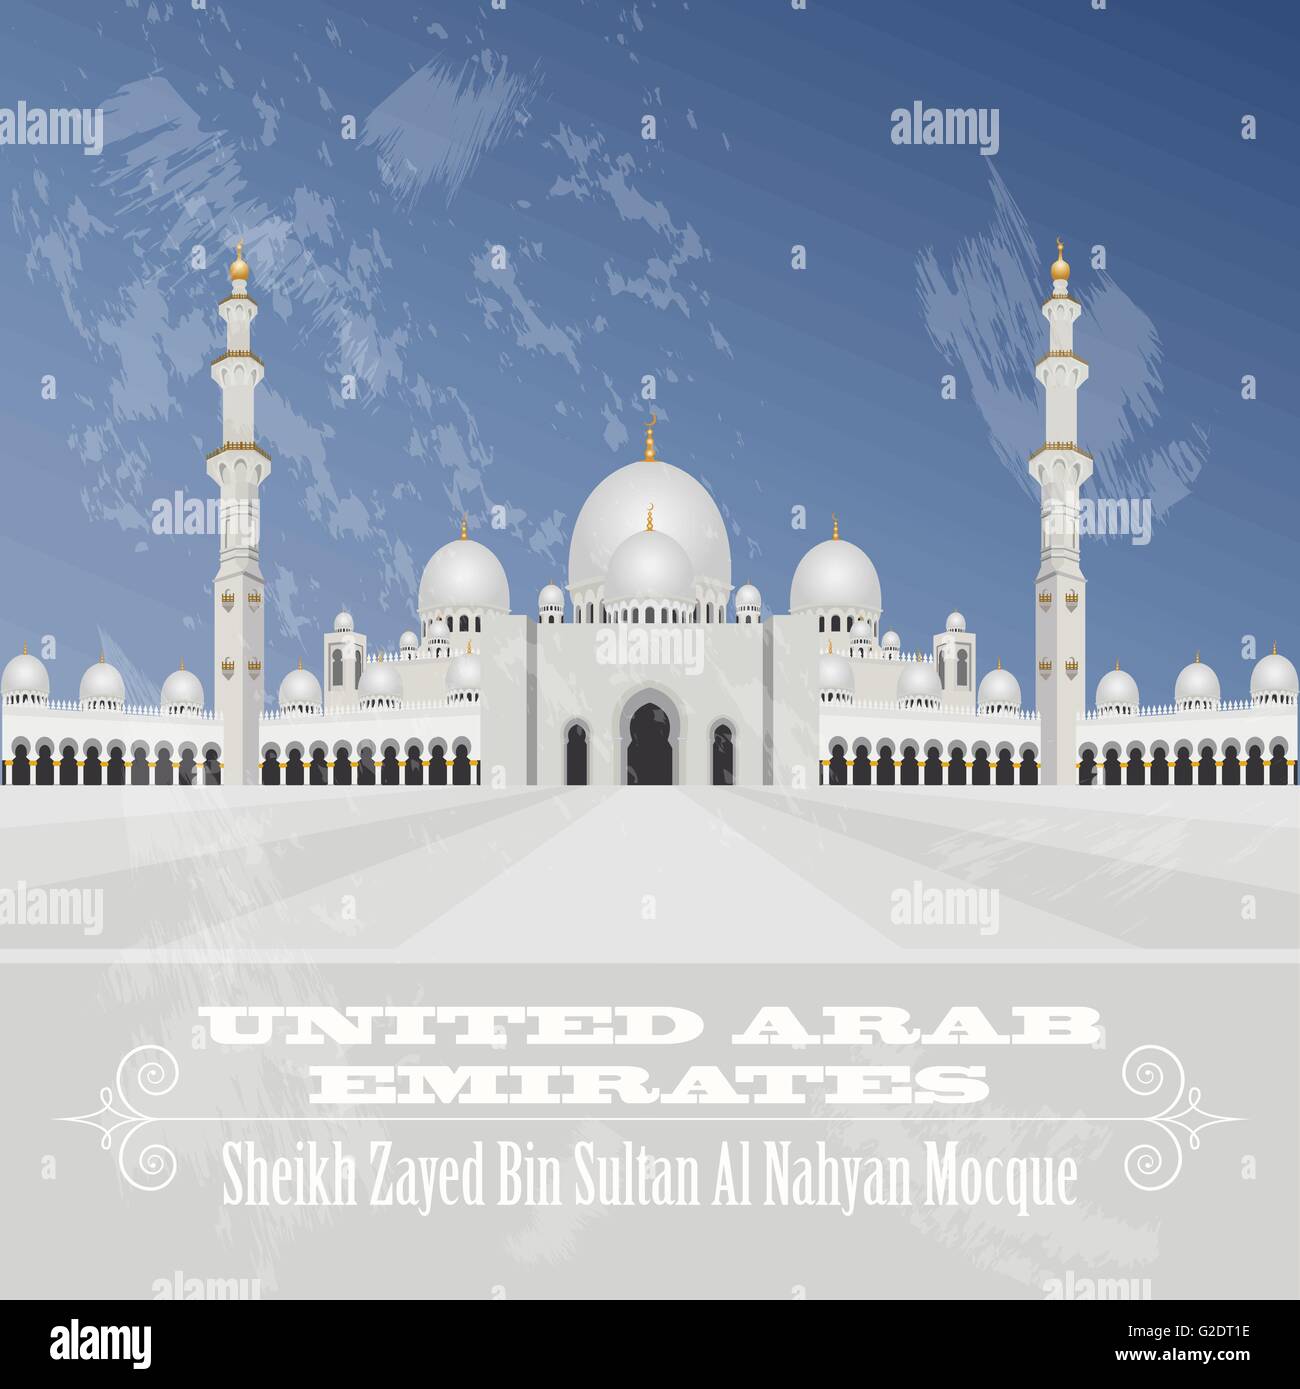 Vereinigte Arabische Emirate Sehenswürdigkeiten. Retro-Stil Bild. Vektor-illustration Stock Vektor